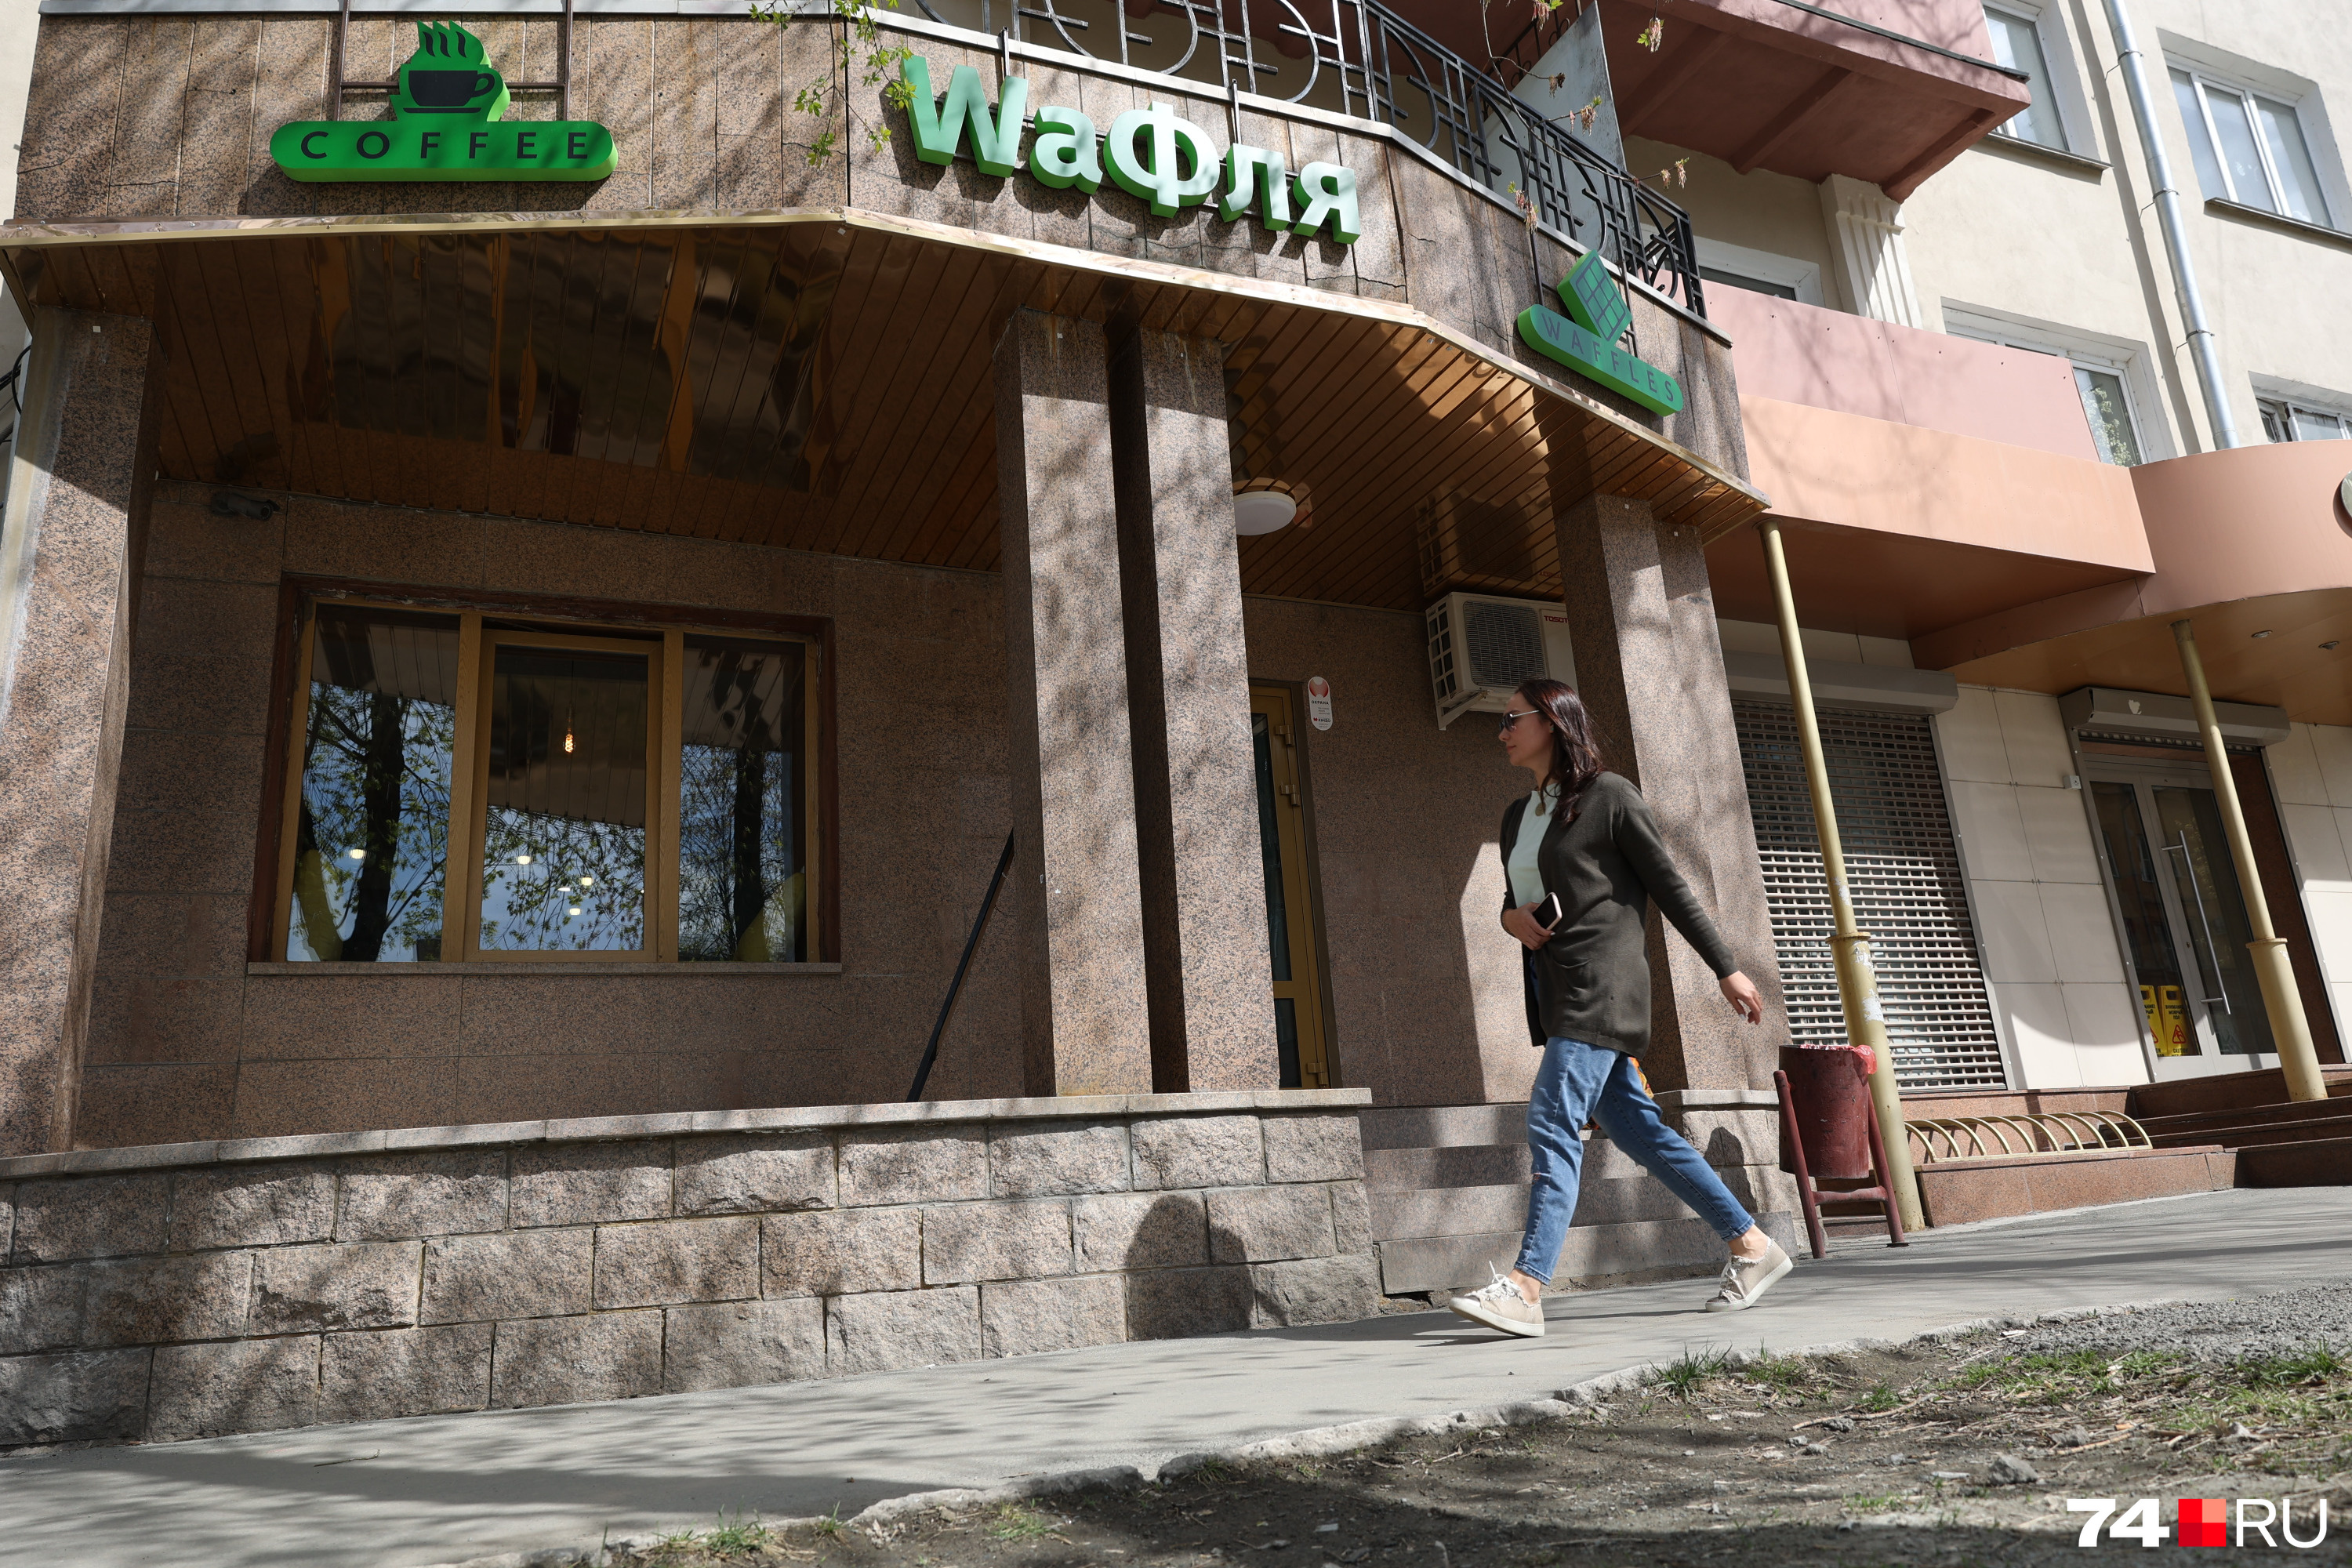 «WaФля» открылась в центре Челябинска в апреле, и у кафе уже есть постоянные посетители